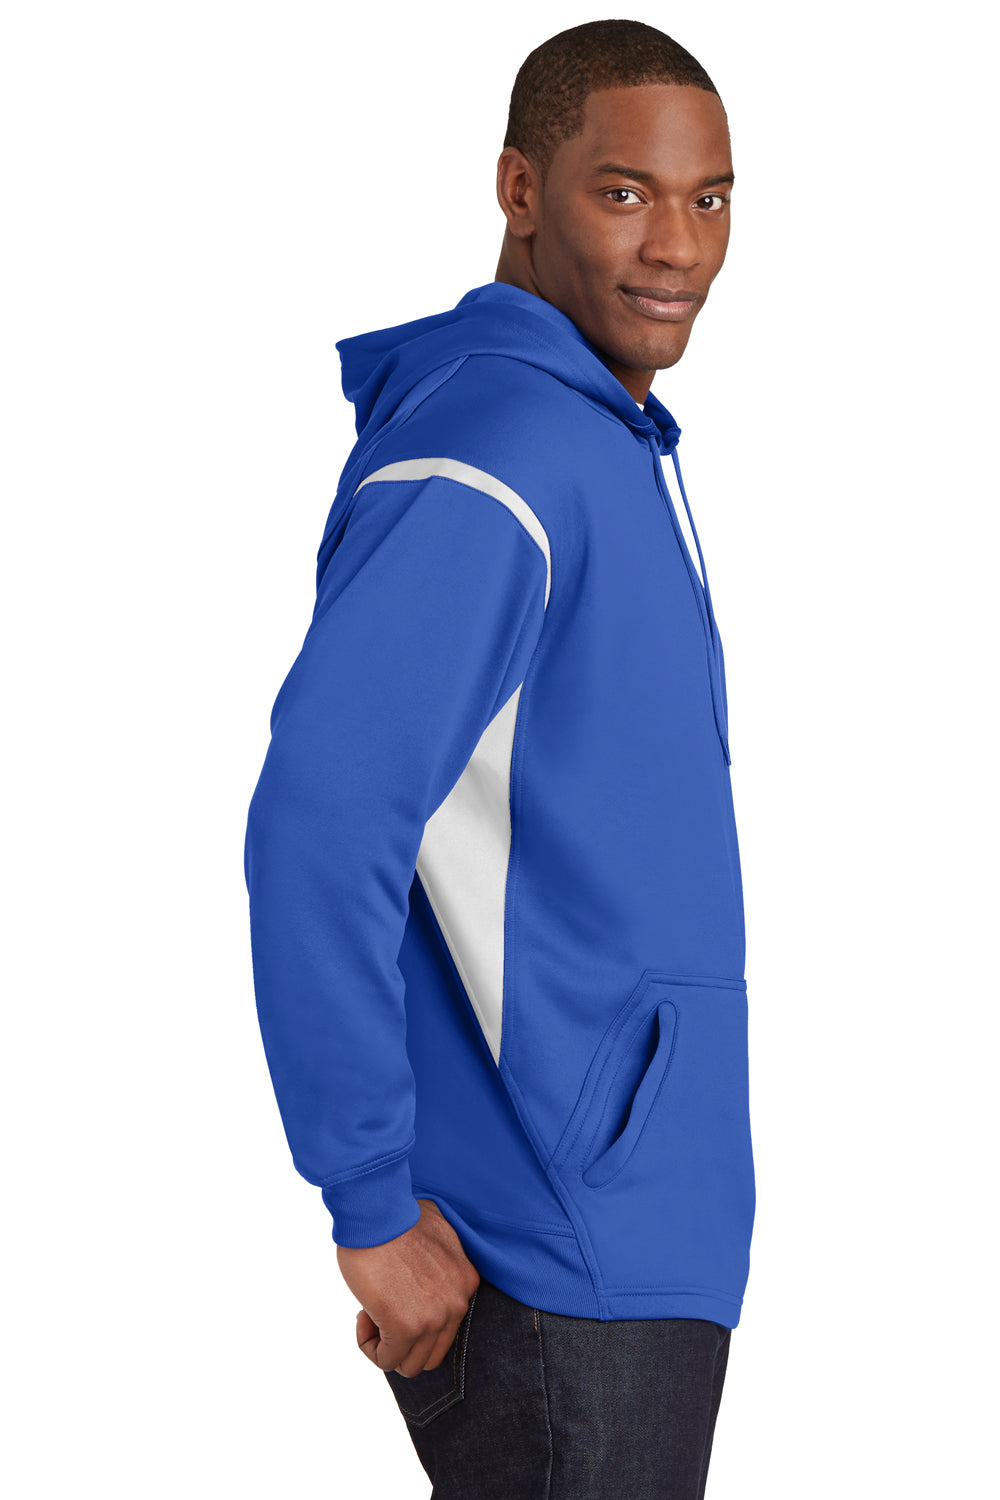 Sport-Tek F246 Mens Tech Moisture Wicking Fleece Hooded Sweatshirt Hoodie Royal Blue/White Side